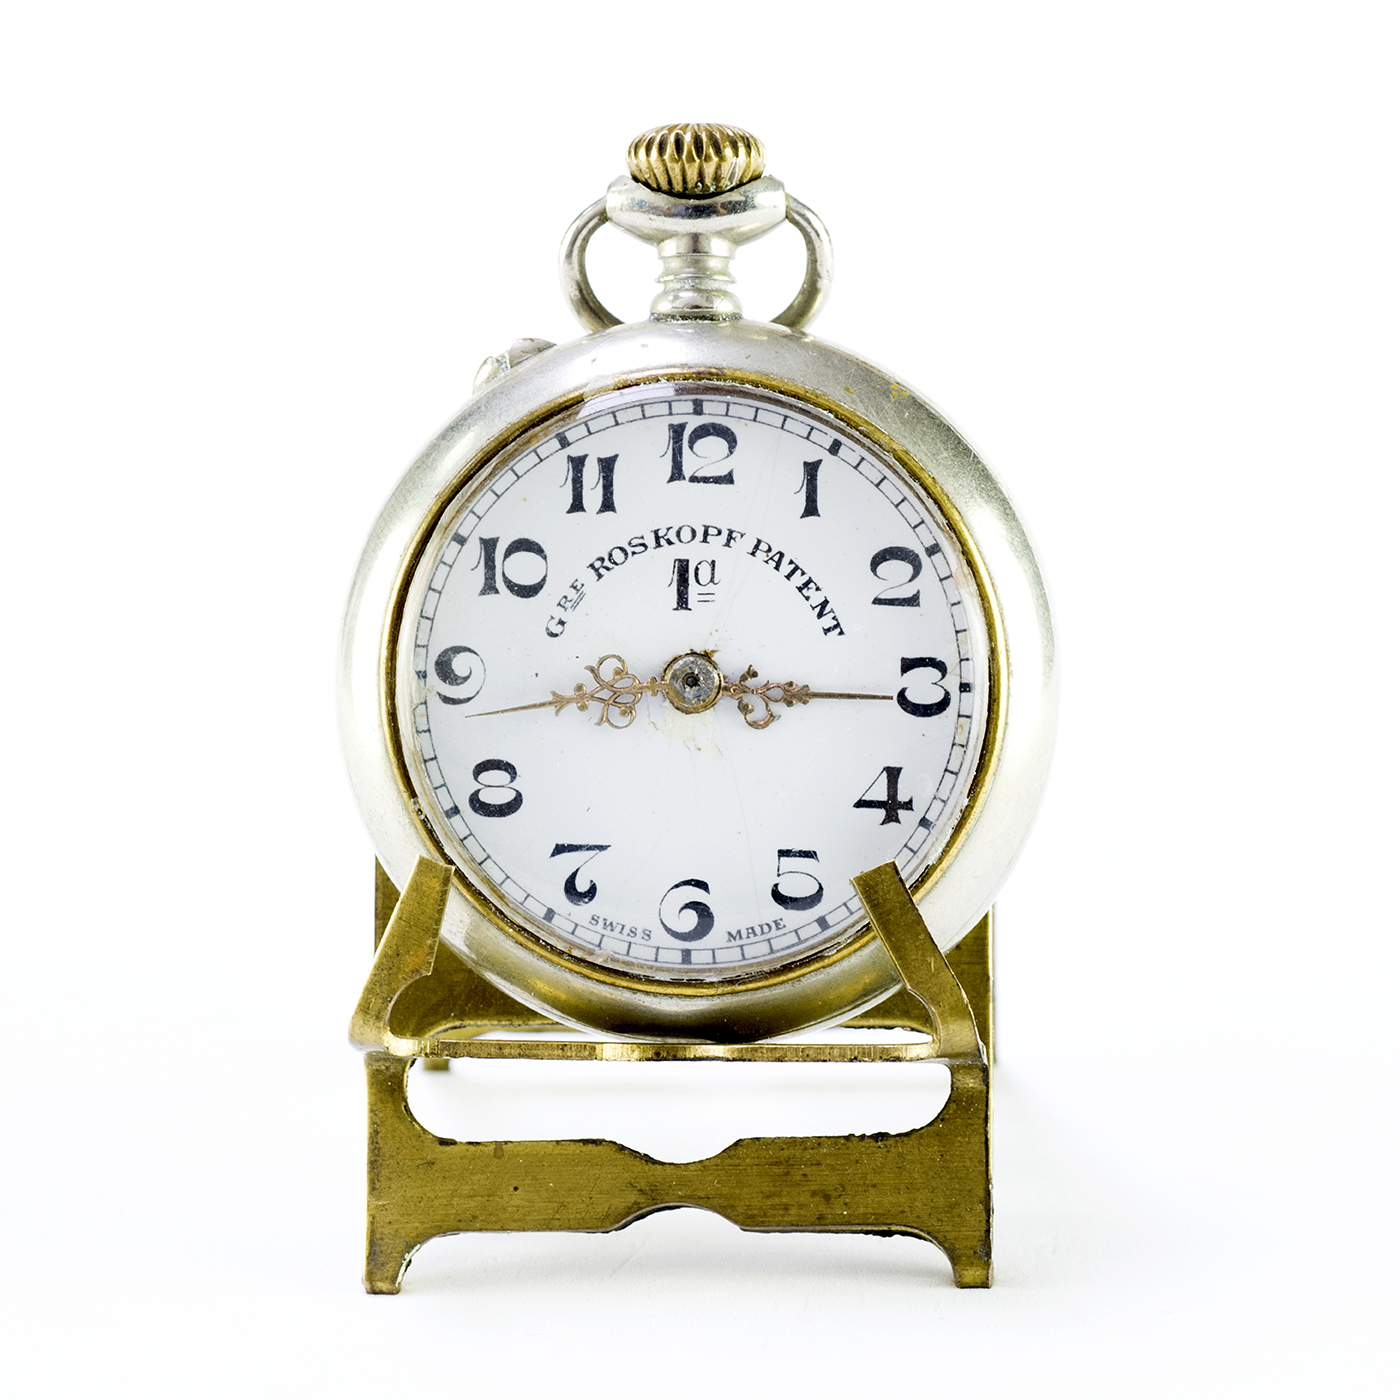 GRE ROSKOPF PATENT 1ª. Reloj de bolsillo, lepine y remontoir. Suiza, ca.1900 Subastas